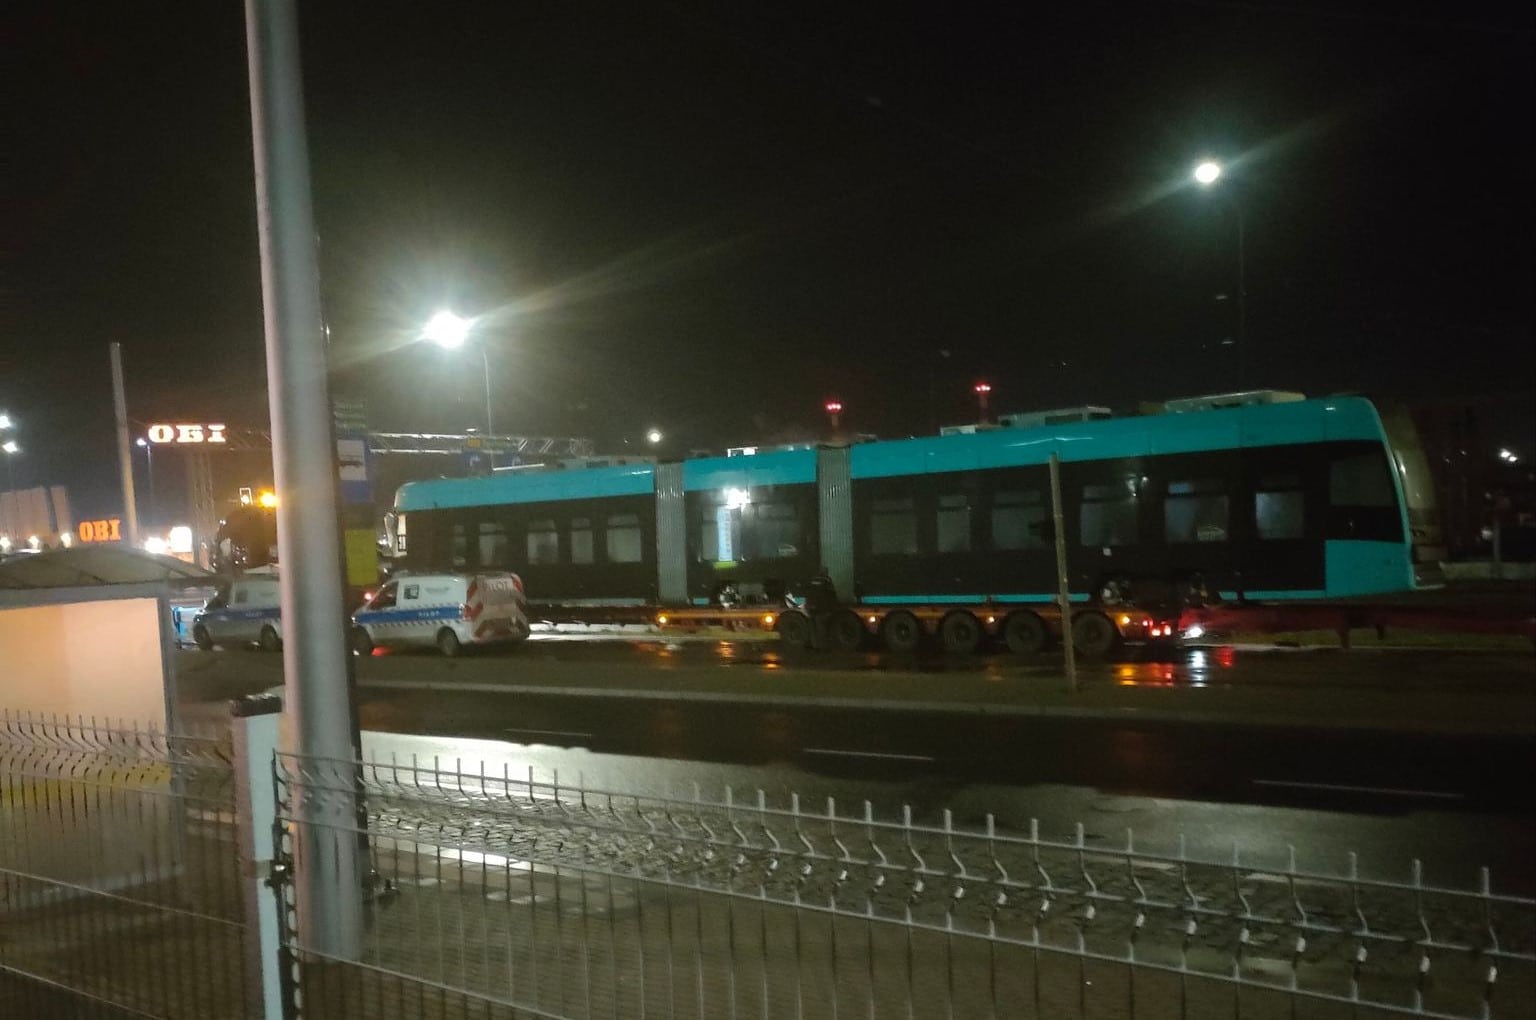 Nowy tramwaj polskiej marki Pesa przyjechał do Olsztyna tramwaje Olsztyn, Wiadomości